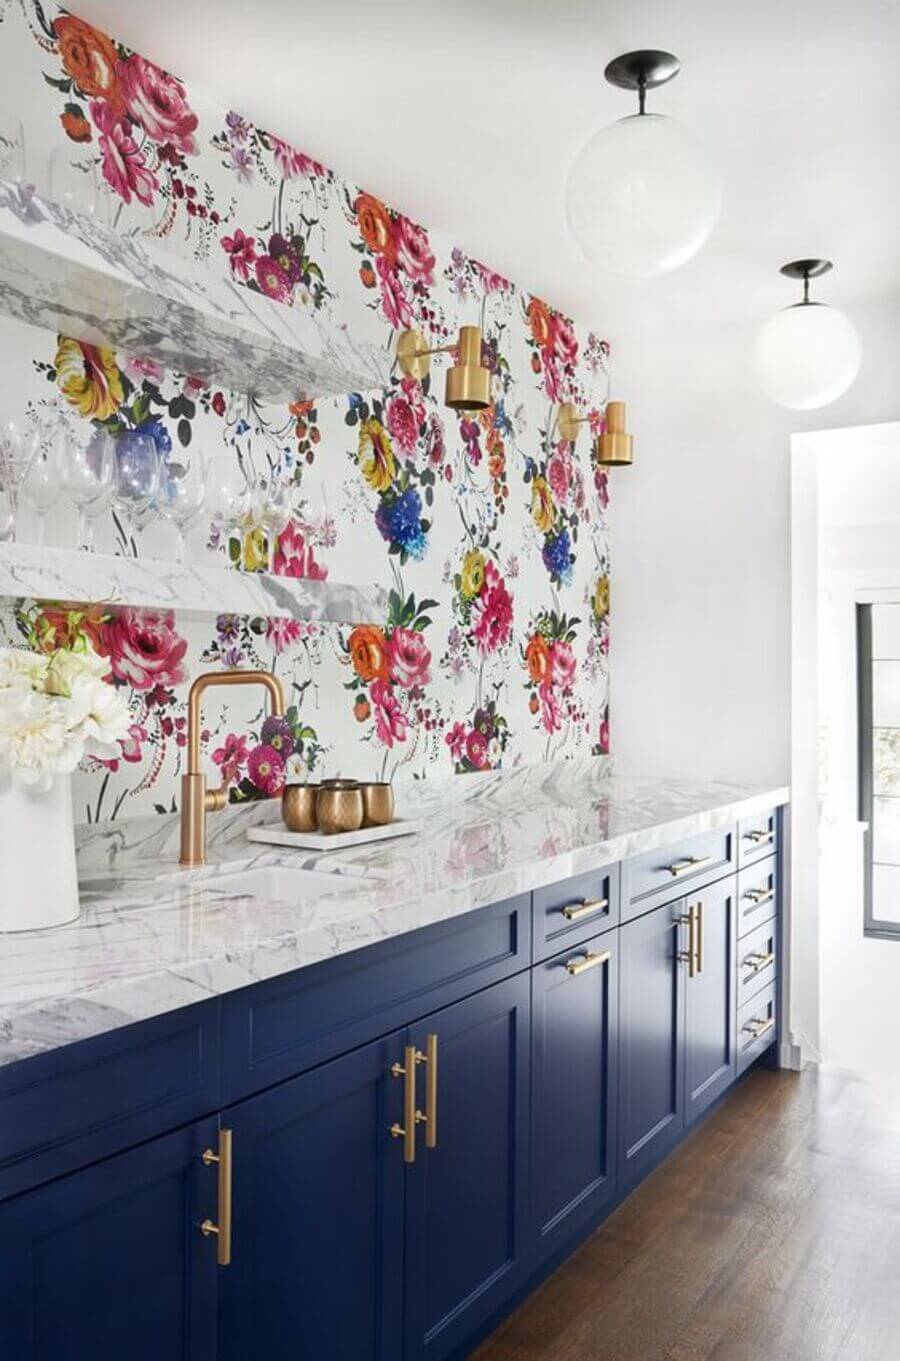 Cocina con papel mural de rosas rojas, rosadas, azules y amarillas. El mueble inferior es azul marino con tiradores dorados y cubierta de mármol.